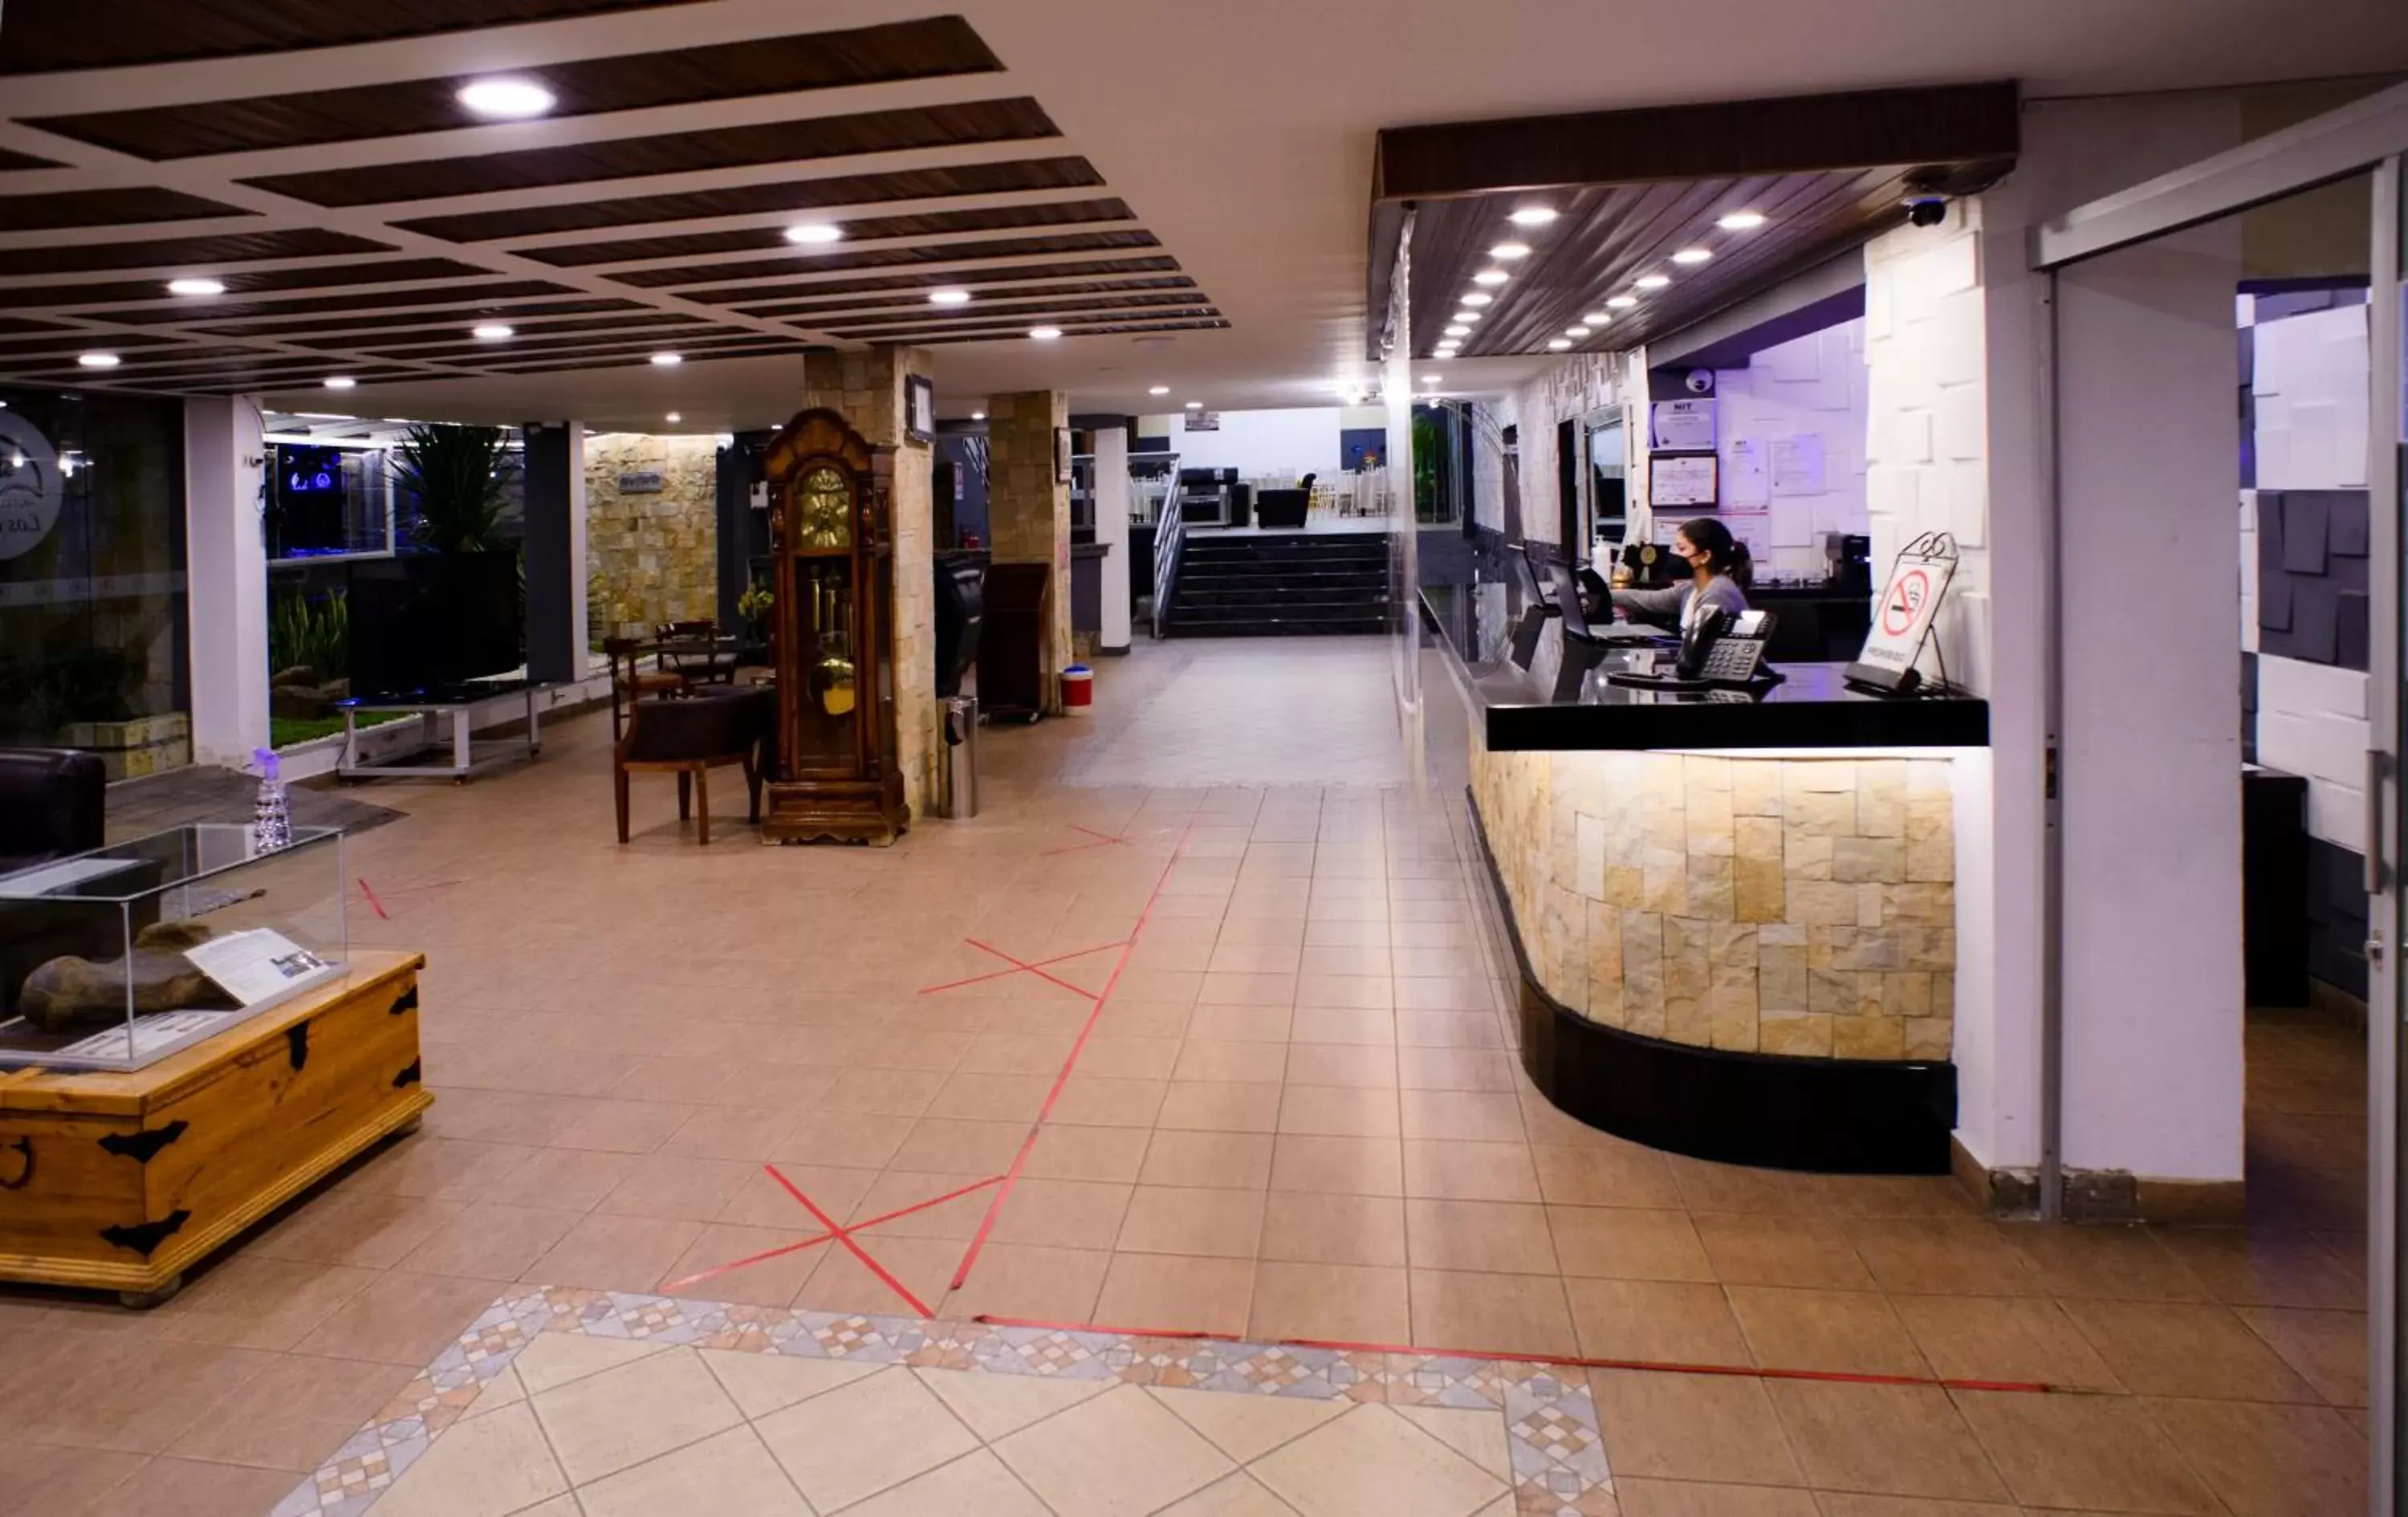 Lobby or reception in Hotel Los Ceibos